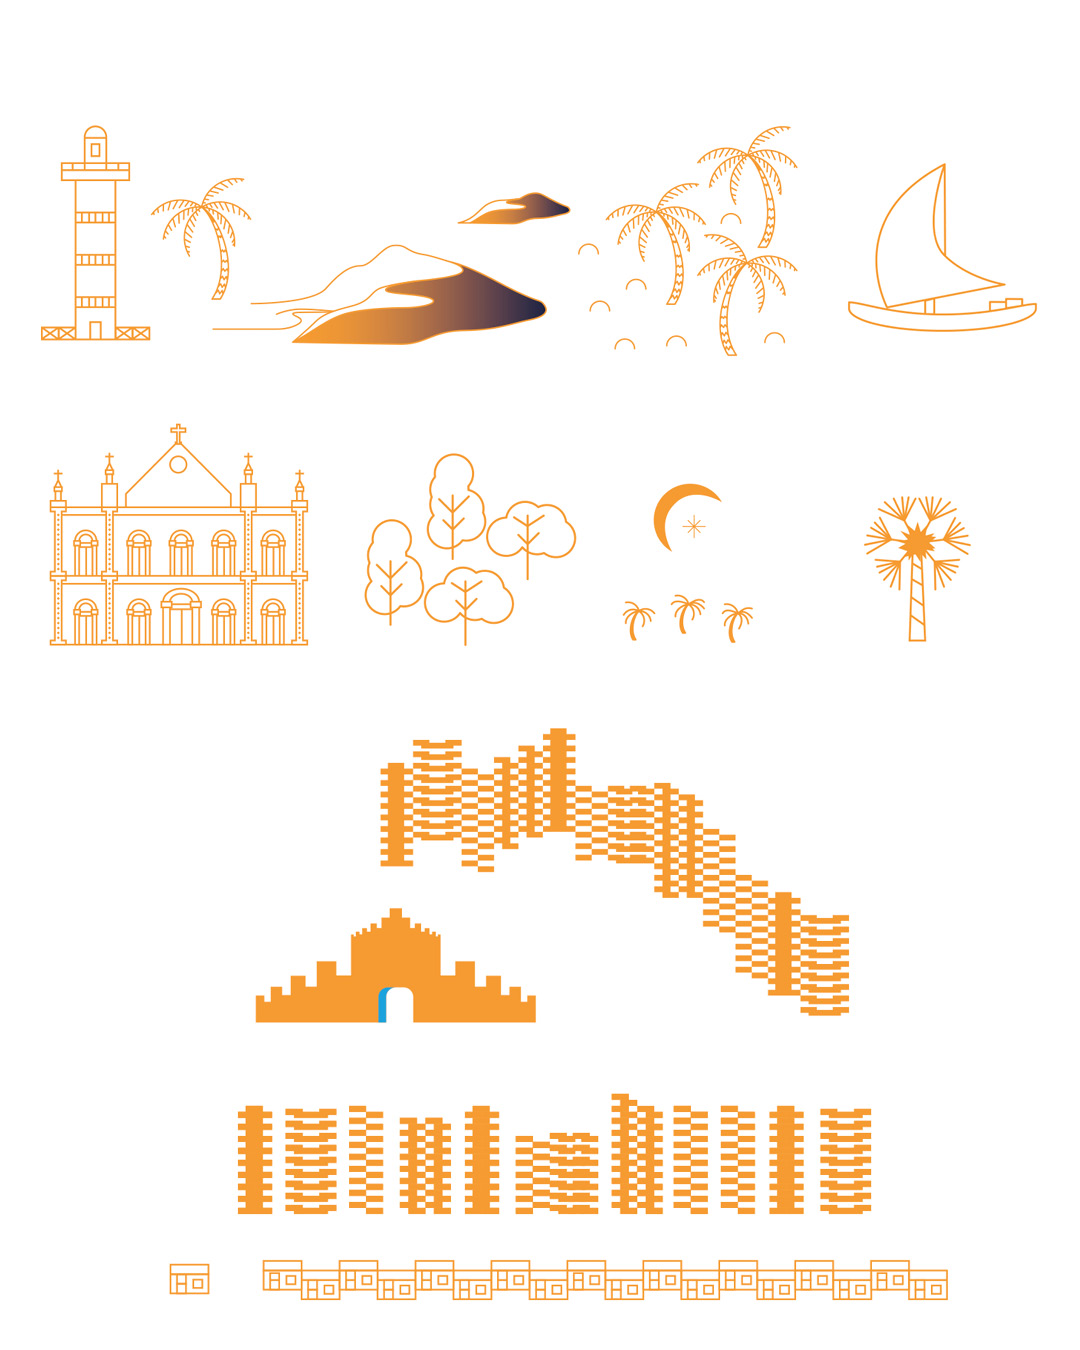 Elementos gráficos isolados: farol do Paracuru, dunas, coqueiros, jangada, igreja de Pacatuba, árvores, lua, carnaúba e abstrações dos prédios de Fortaleza